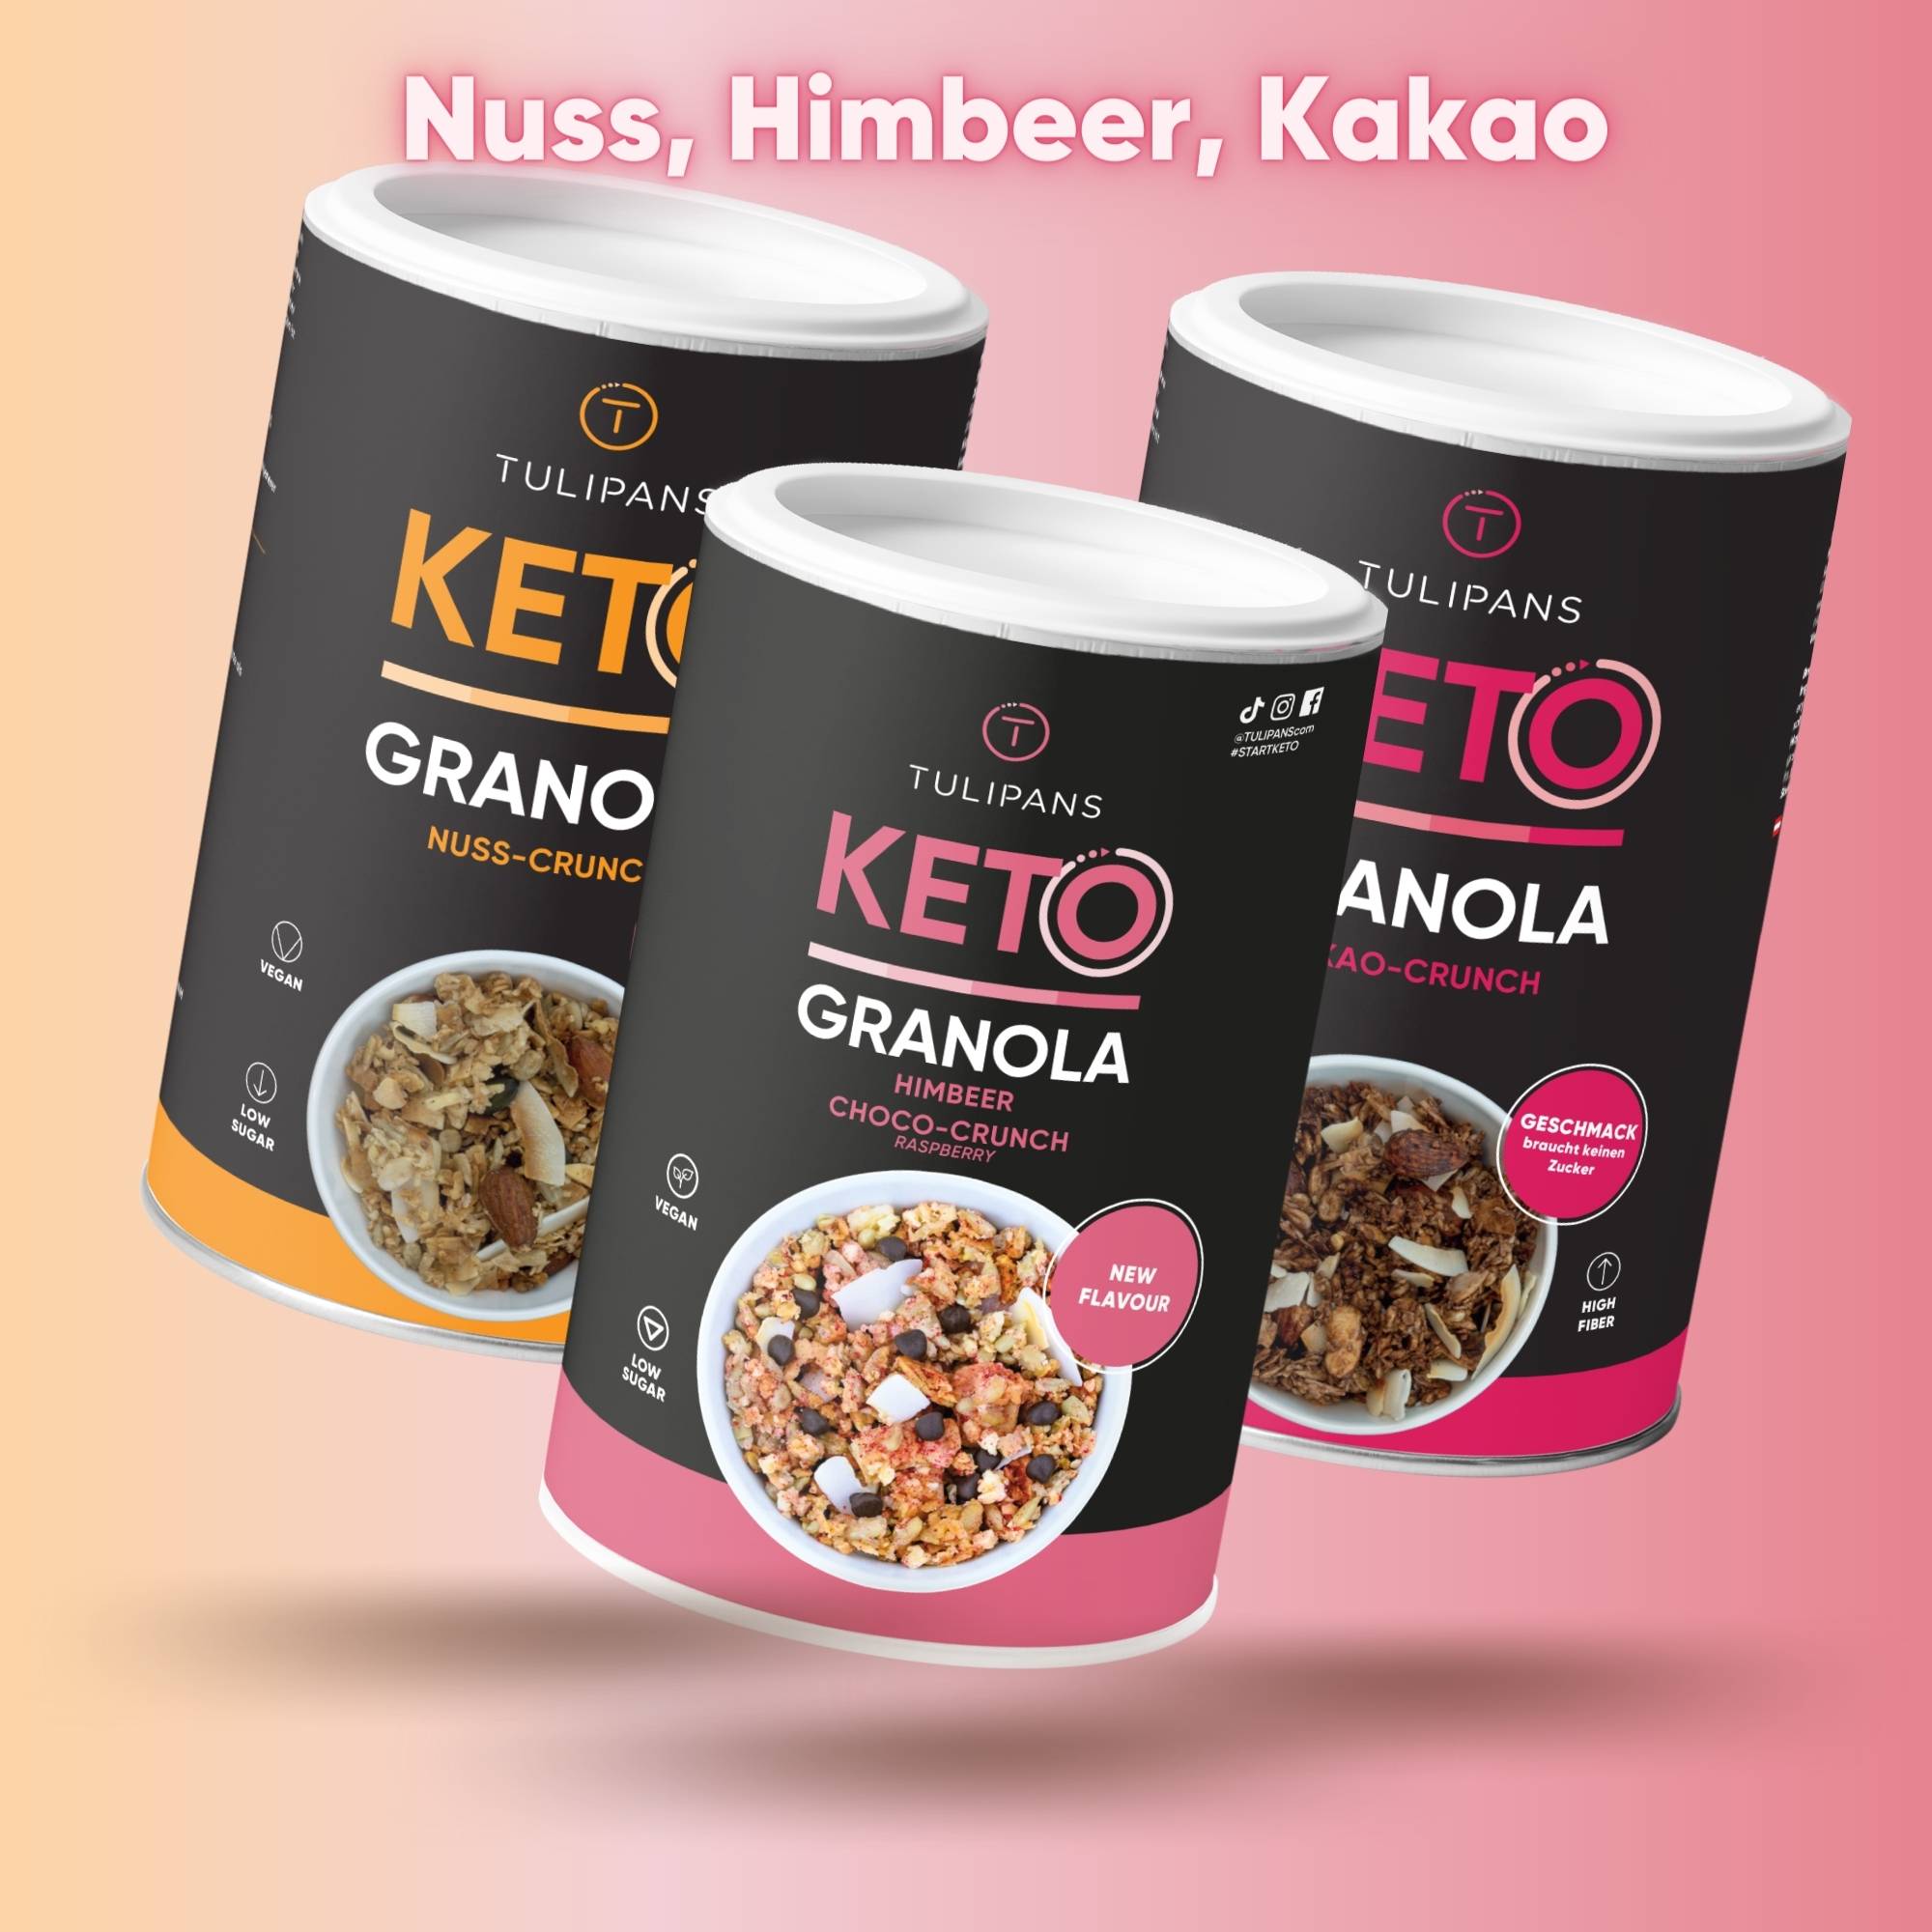 [Paket] KETO GRANOLA 3er MIX Himbeer-Choco-, Nuss- und Kakao-Crunch 3x250g